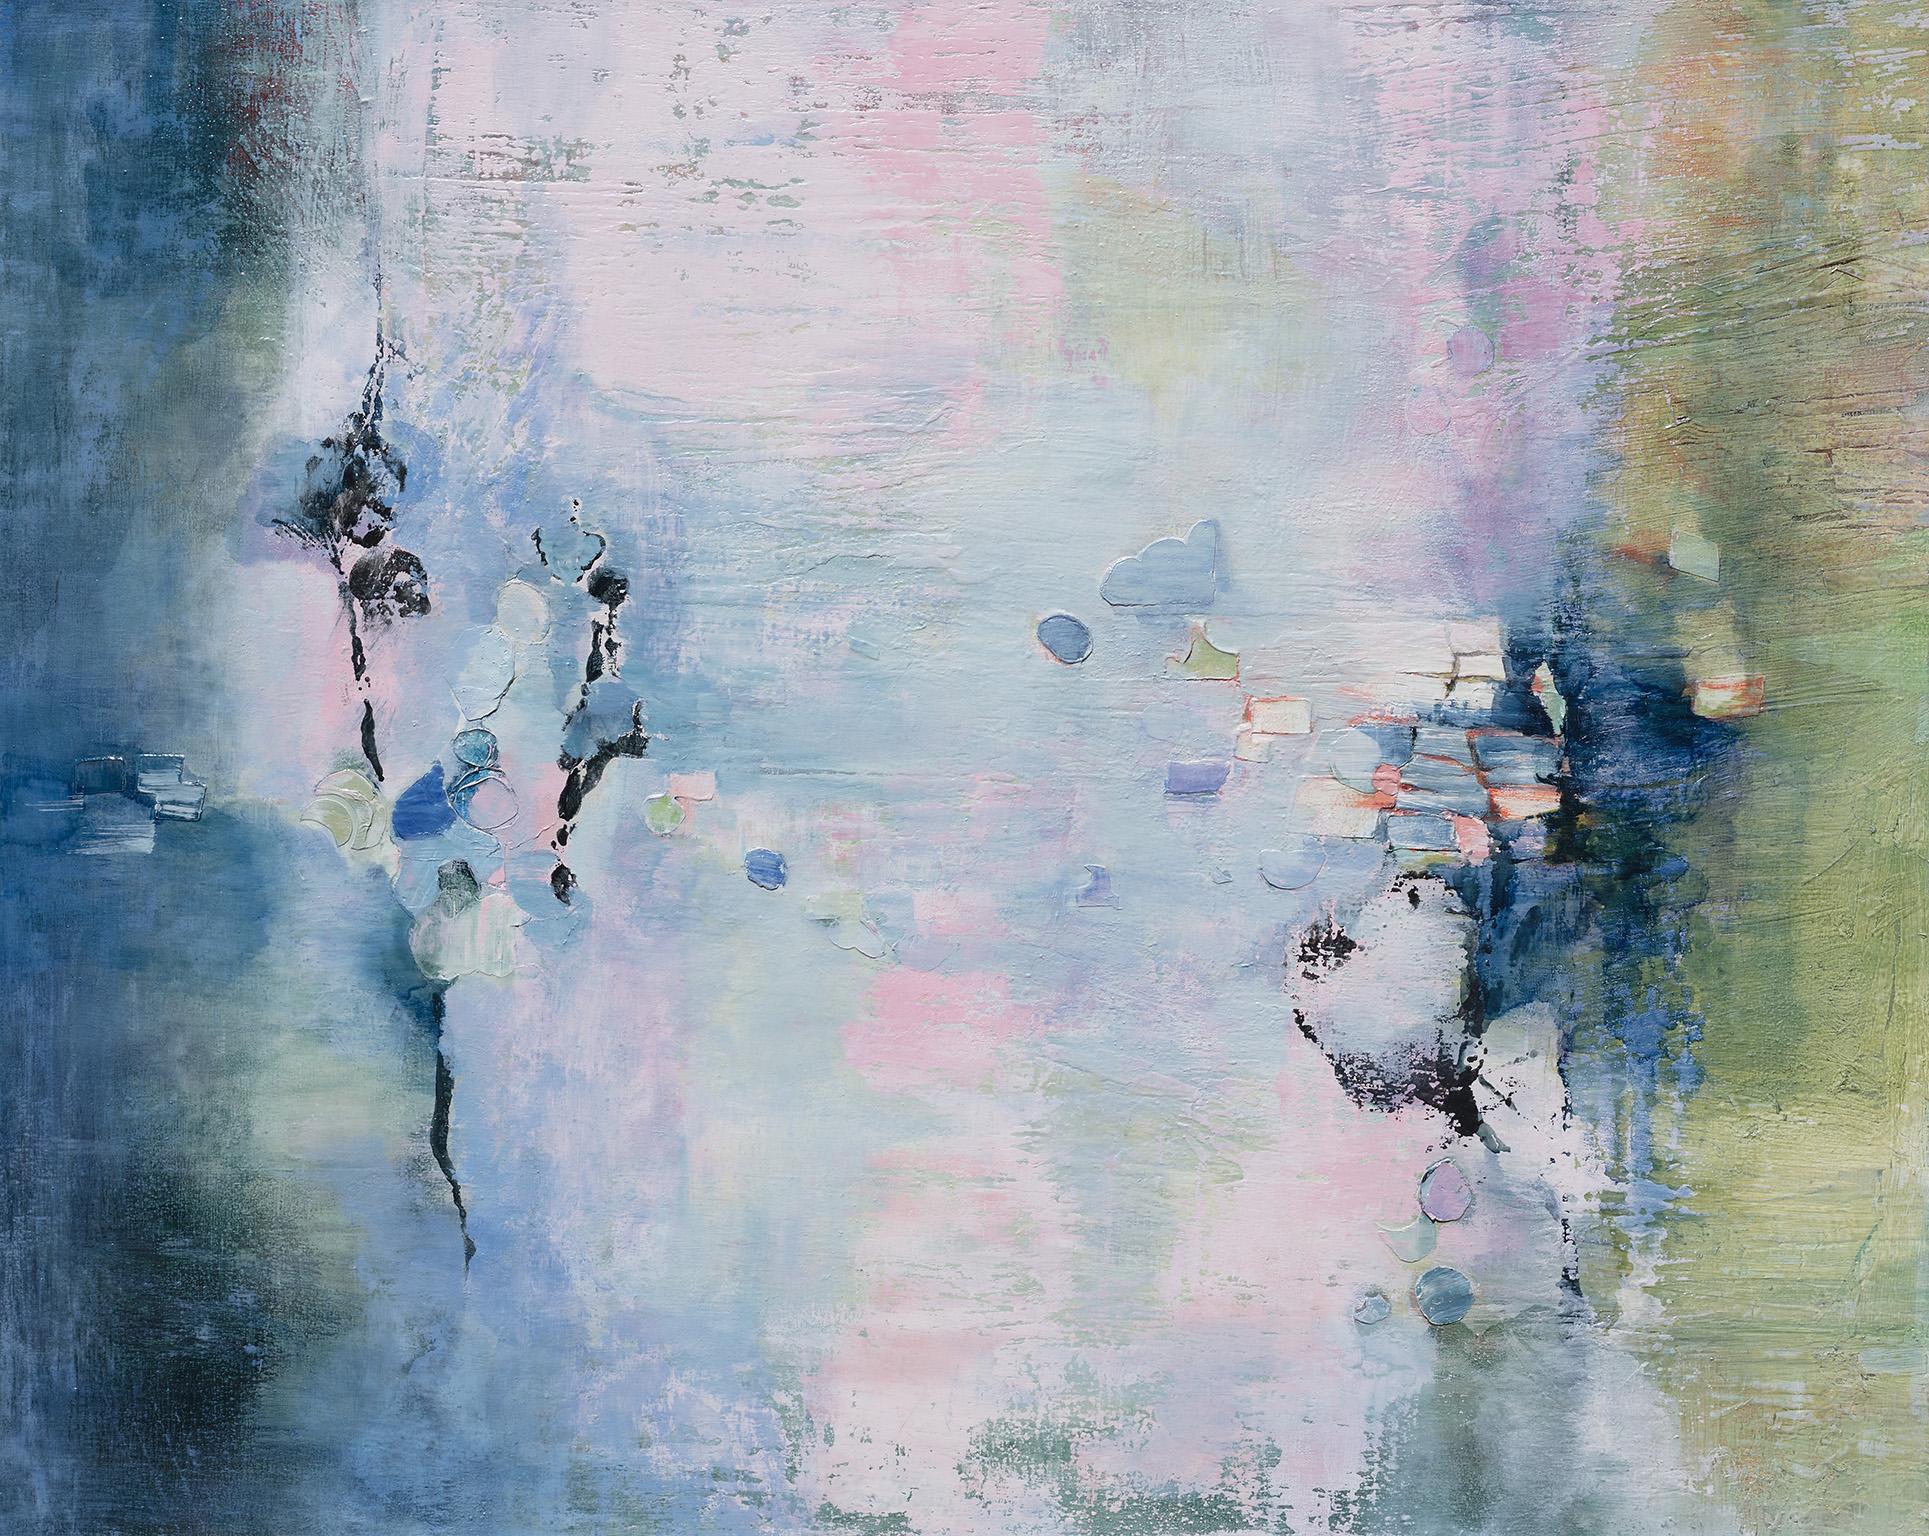 Abstract Painting Andrei Petrov - Dreams numériques - Huile sur toile - Couleurs pastel bleu, vert et rose